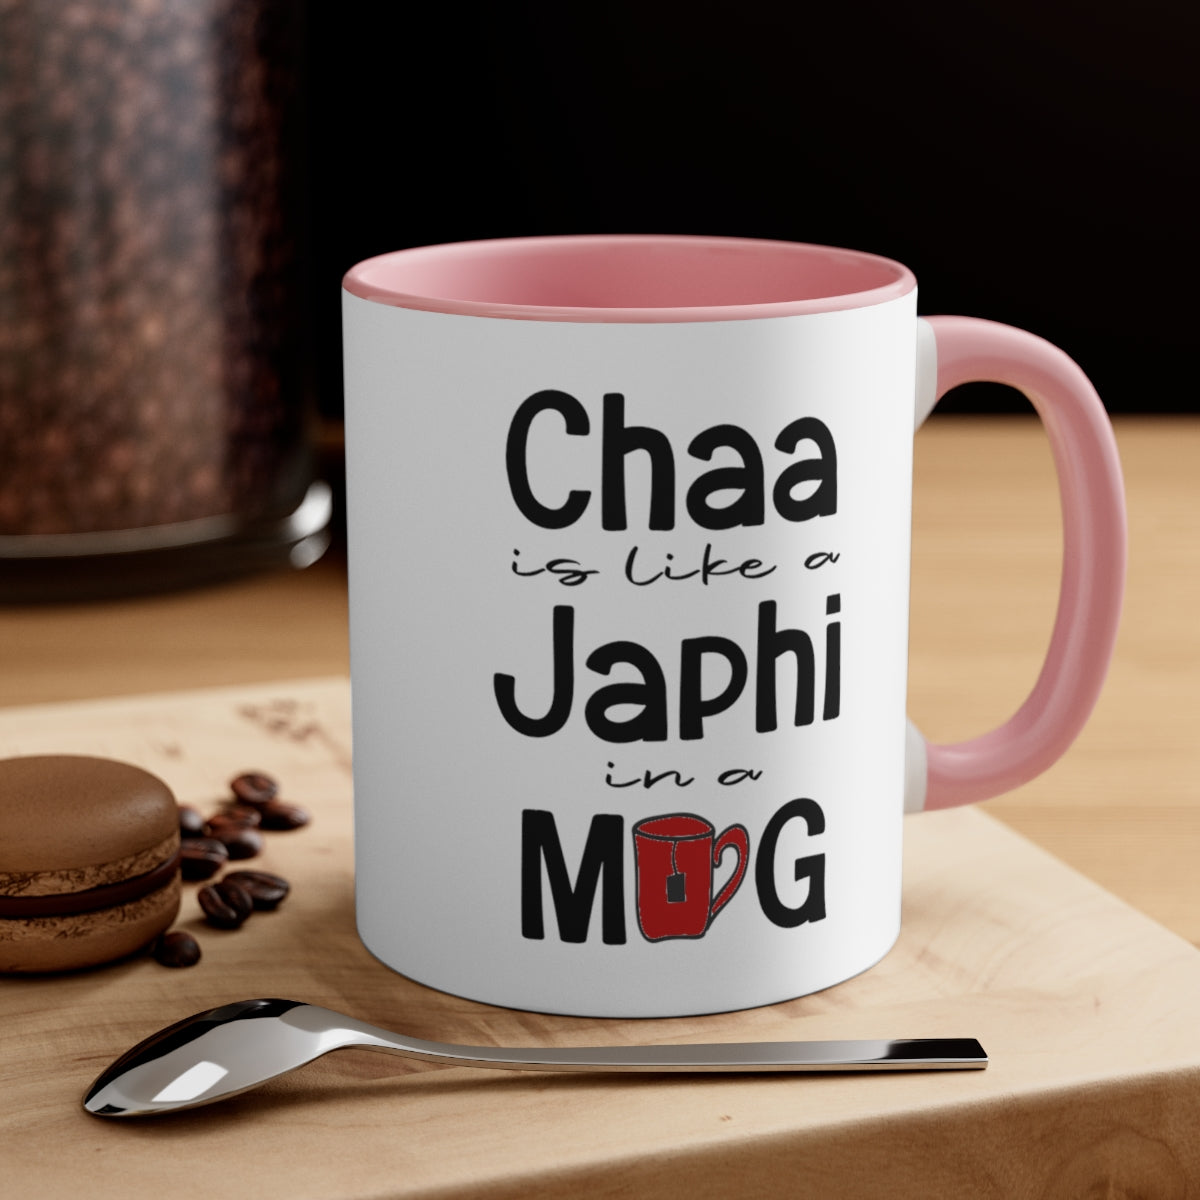 
                  
                    Chaa is like a Japhi Mug
                  
                